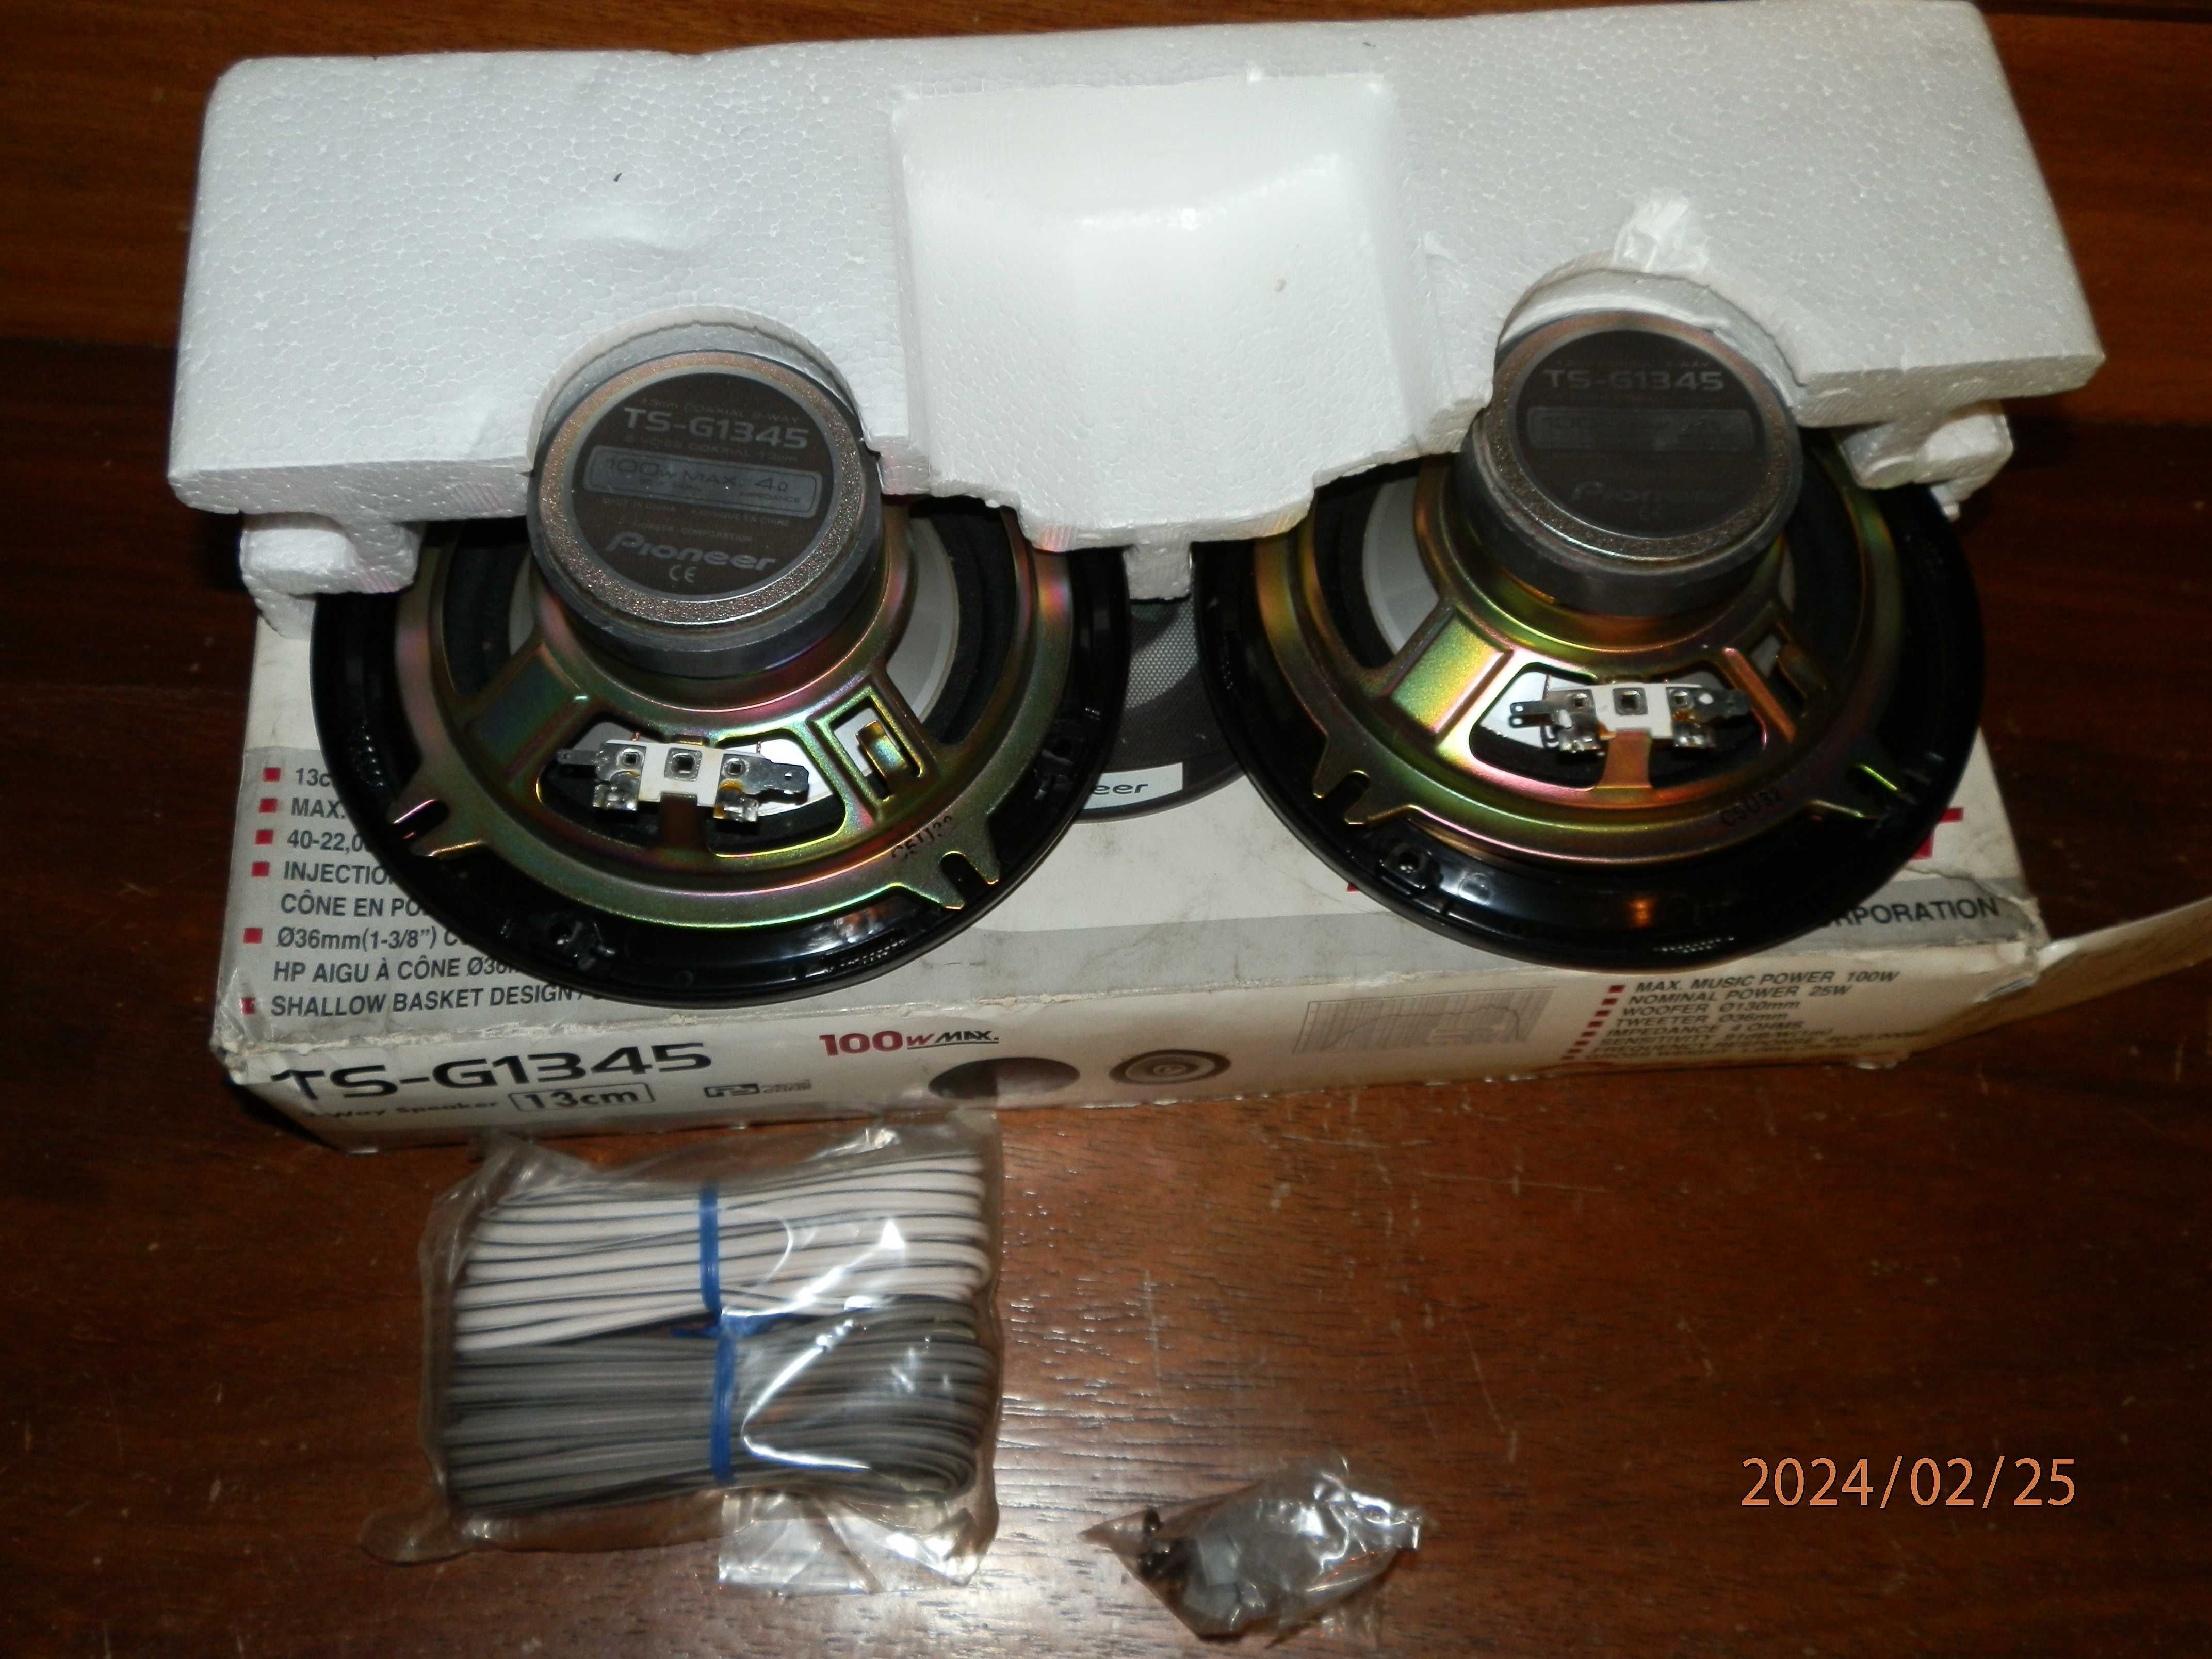 2 Speakers Auto 
Pioneer TS-G1345 13 cm 
 novos